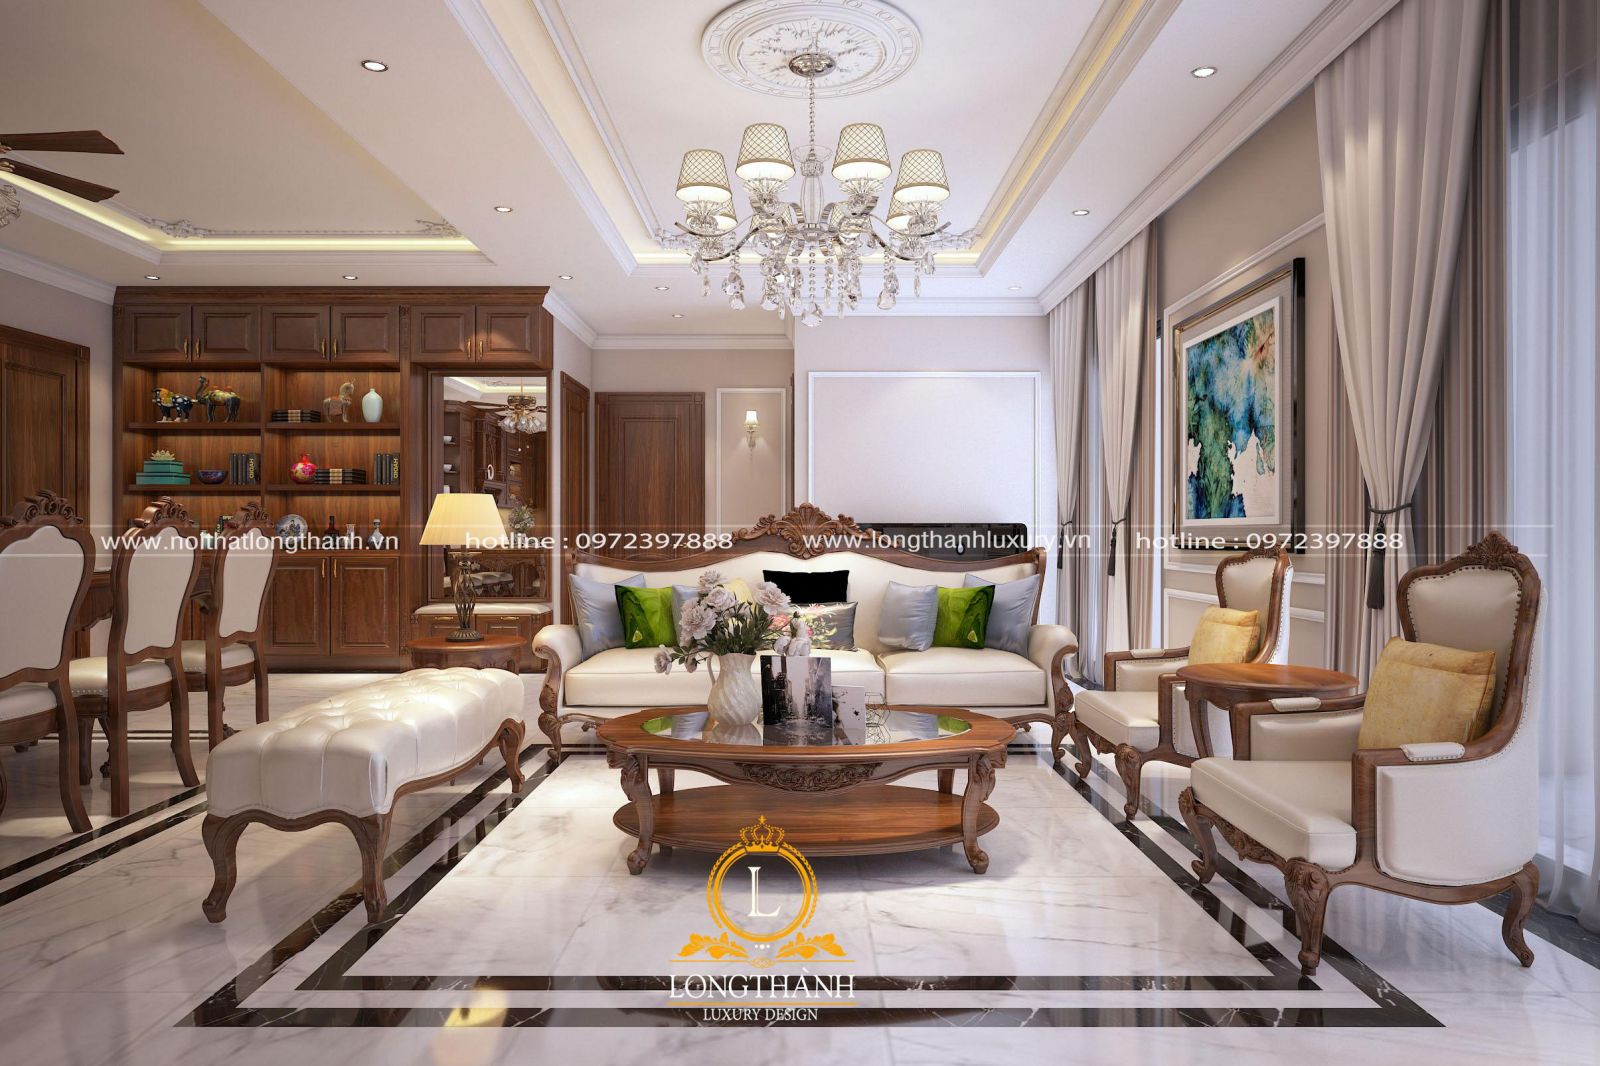 Mẫu sofa được sử dụng chất liệu cao cấp với gam màu sáng hài hòa với tổng thể không gian phòng khách